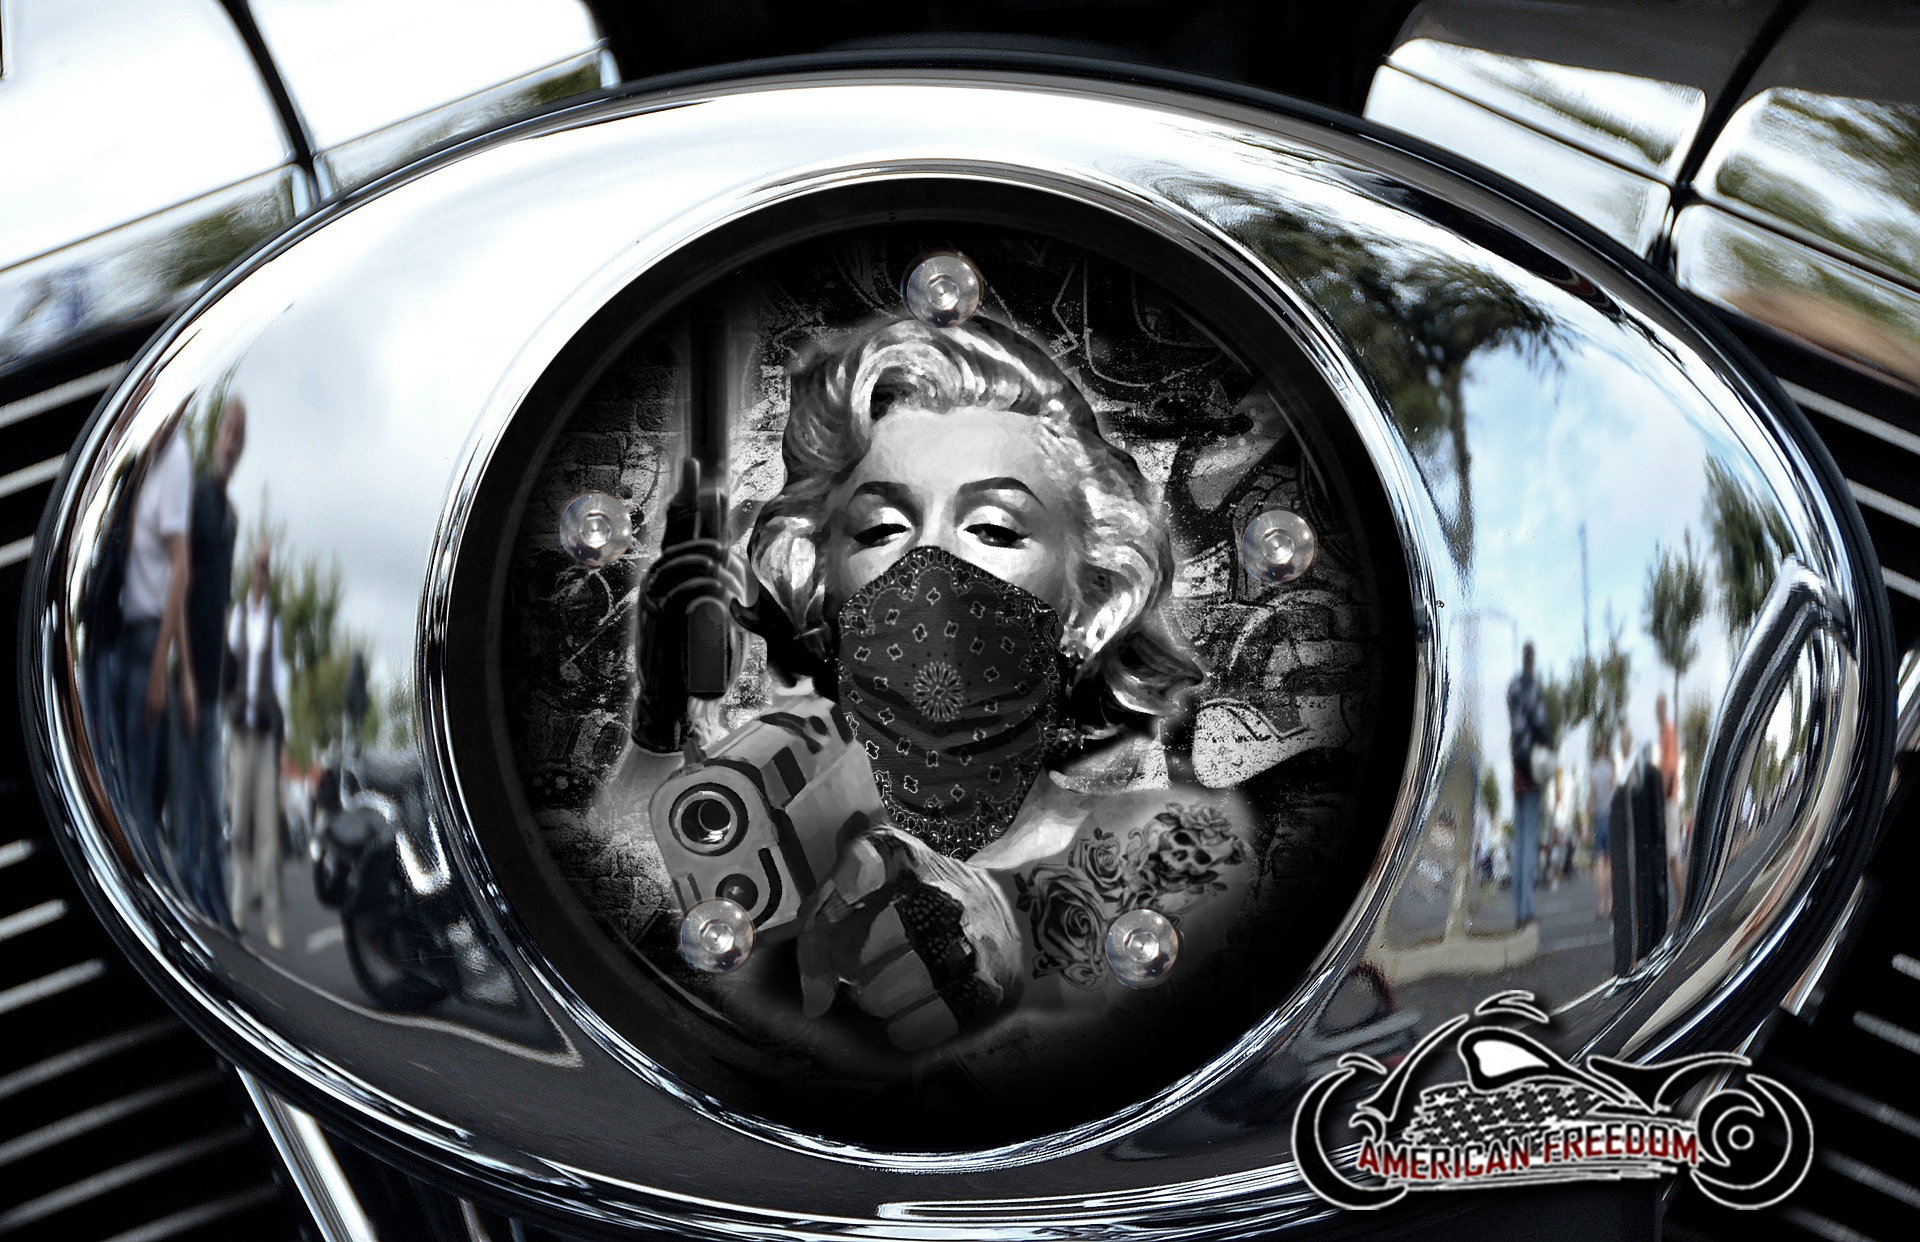 Custom Air Cleaner Cover - BW Gunner Marilyn